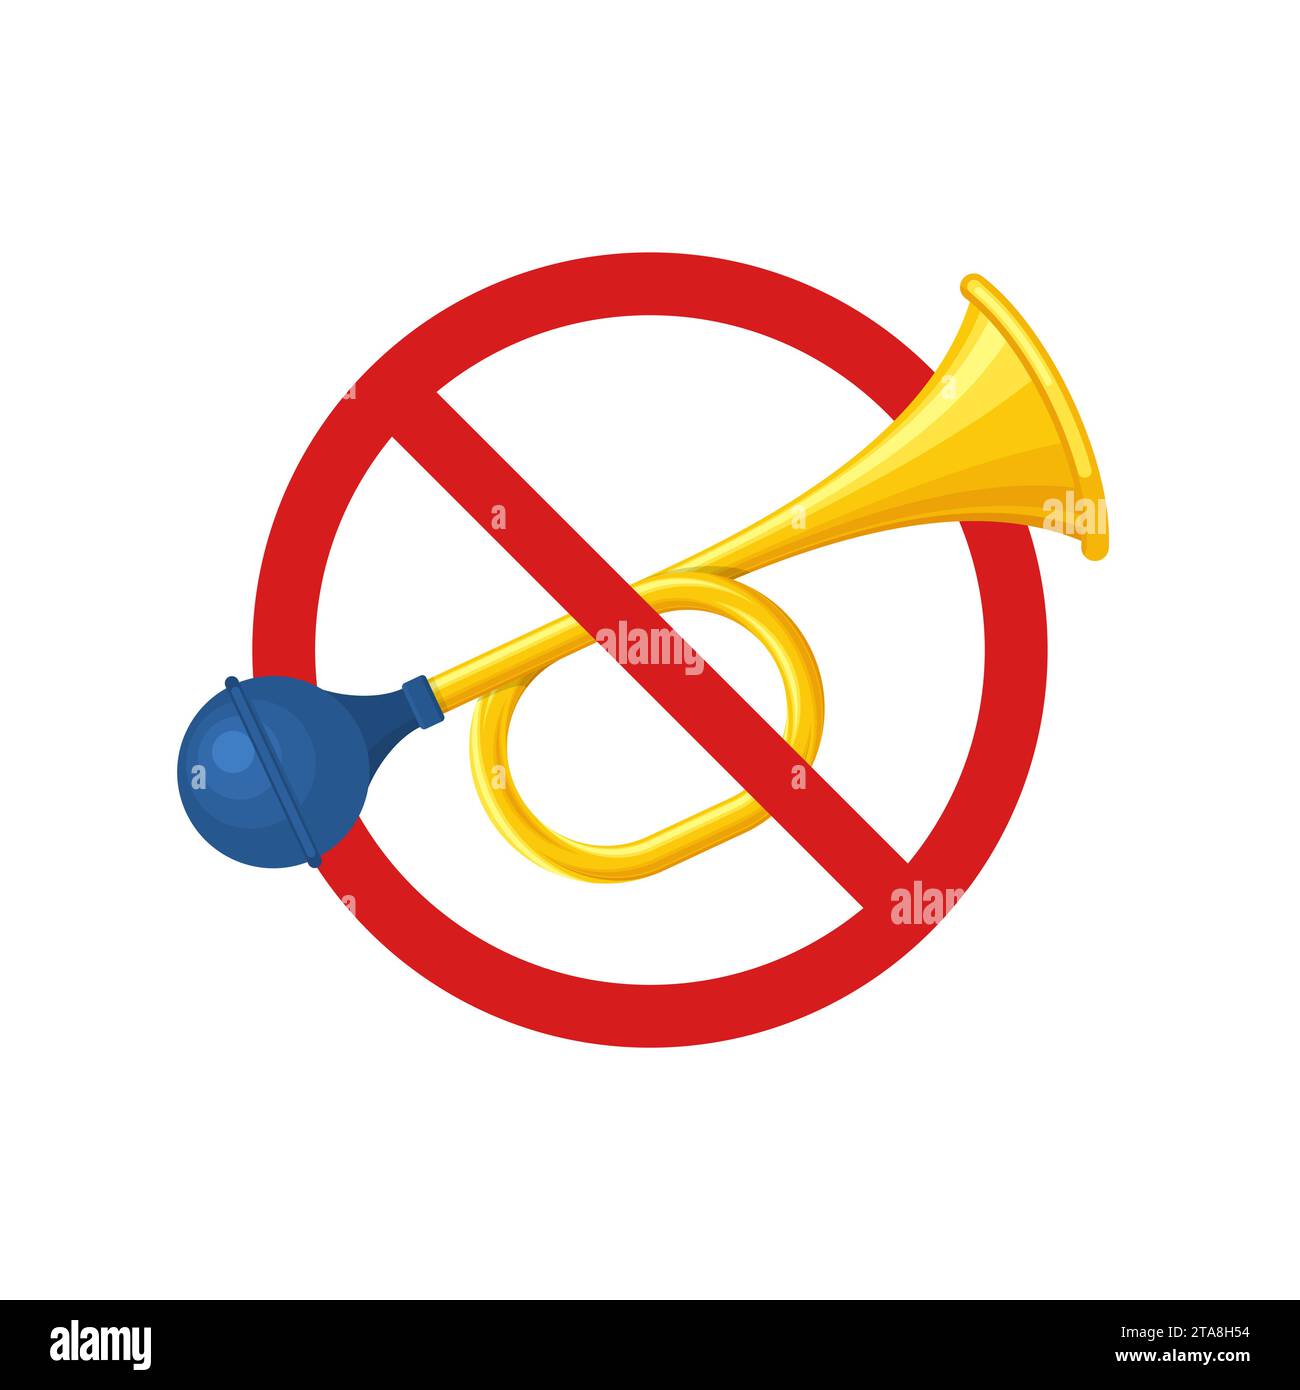 Kein Signalhorn auf weißem Hintergrund. Durchgestrichenes Signalhorn-Symbol,  Verbot rauer Geräusche. Hupen verbieten. Kein lautes Symbol  Stock-Vektorgrafik - Alamy